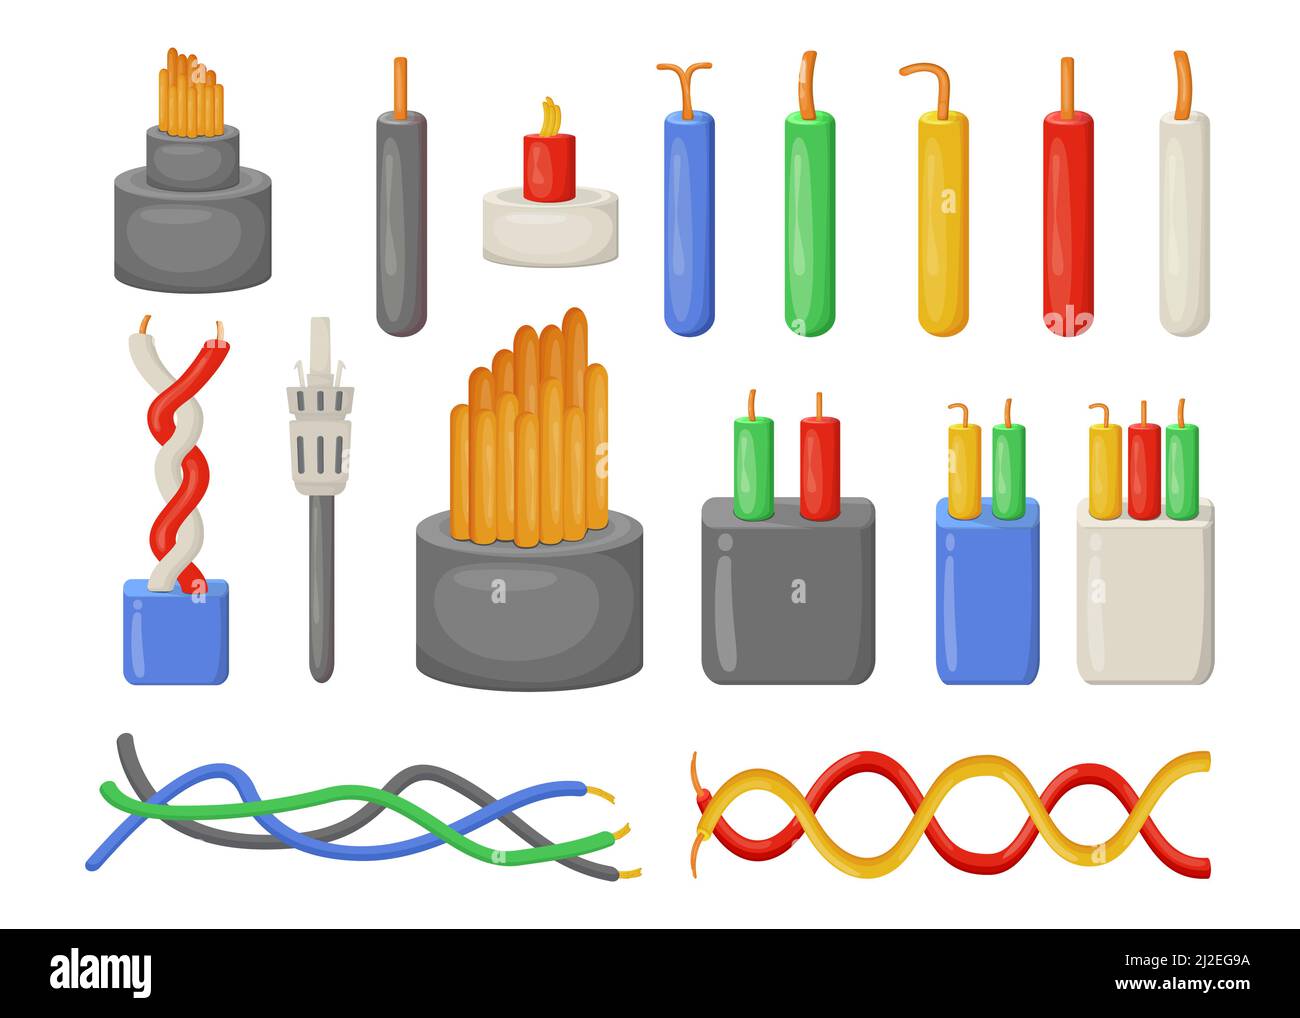 Cartoon elektrische Kabel flache Vektor-Illustrationen-Set. Sammlung von verschiedenen elektrischen Industriedrähten isoliert auf weißem Hintergrund. Strom, Stock Vektor